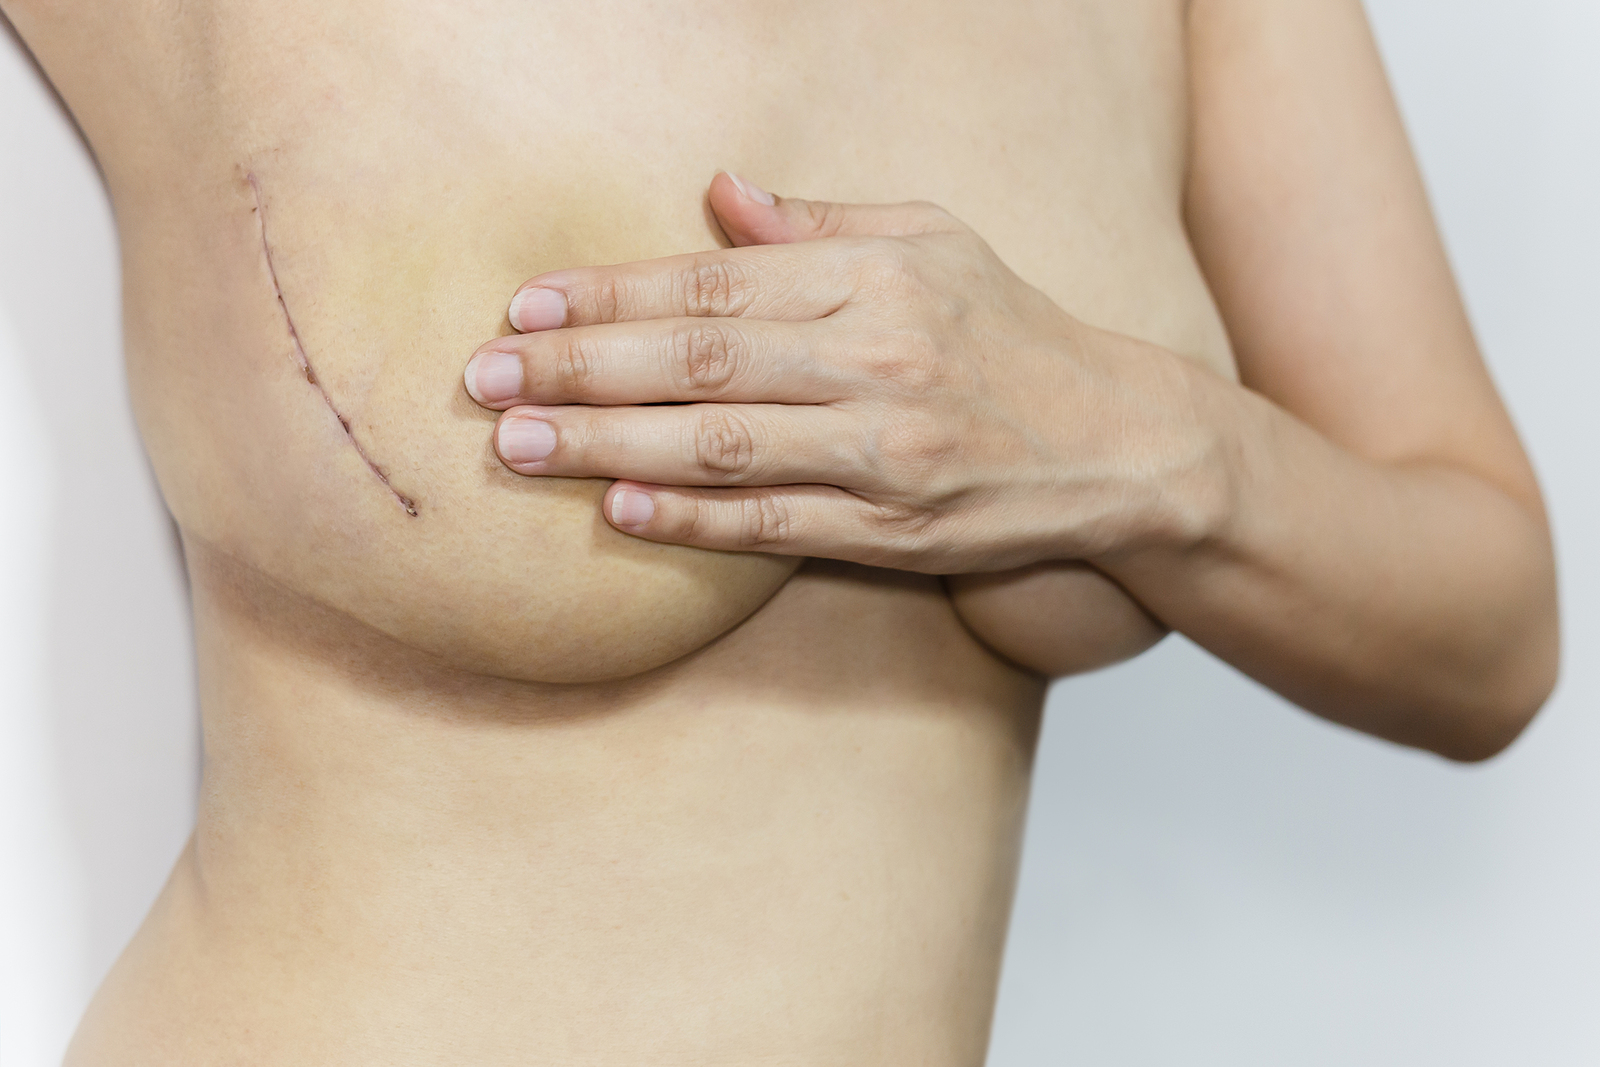 cicatrices de la extracción de implantes mamarios | cicatrices en los senos después de la cirugía